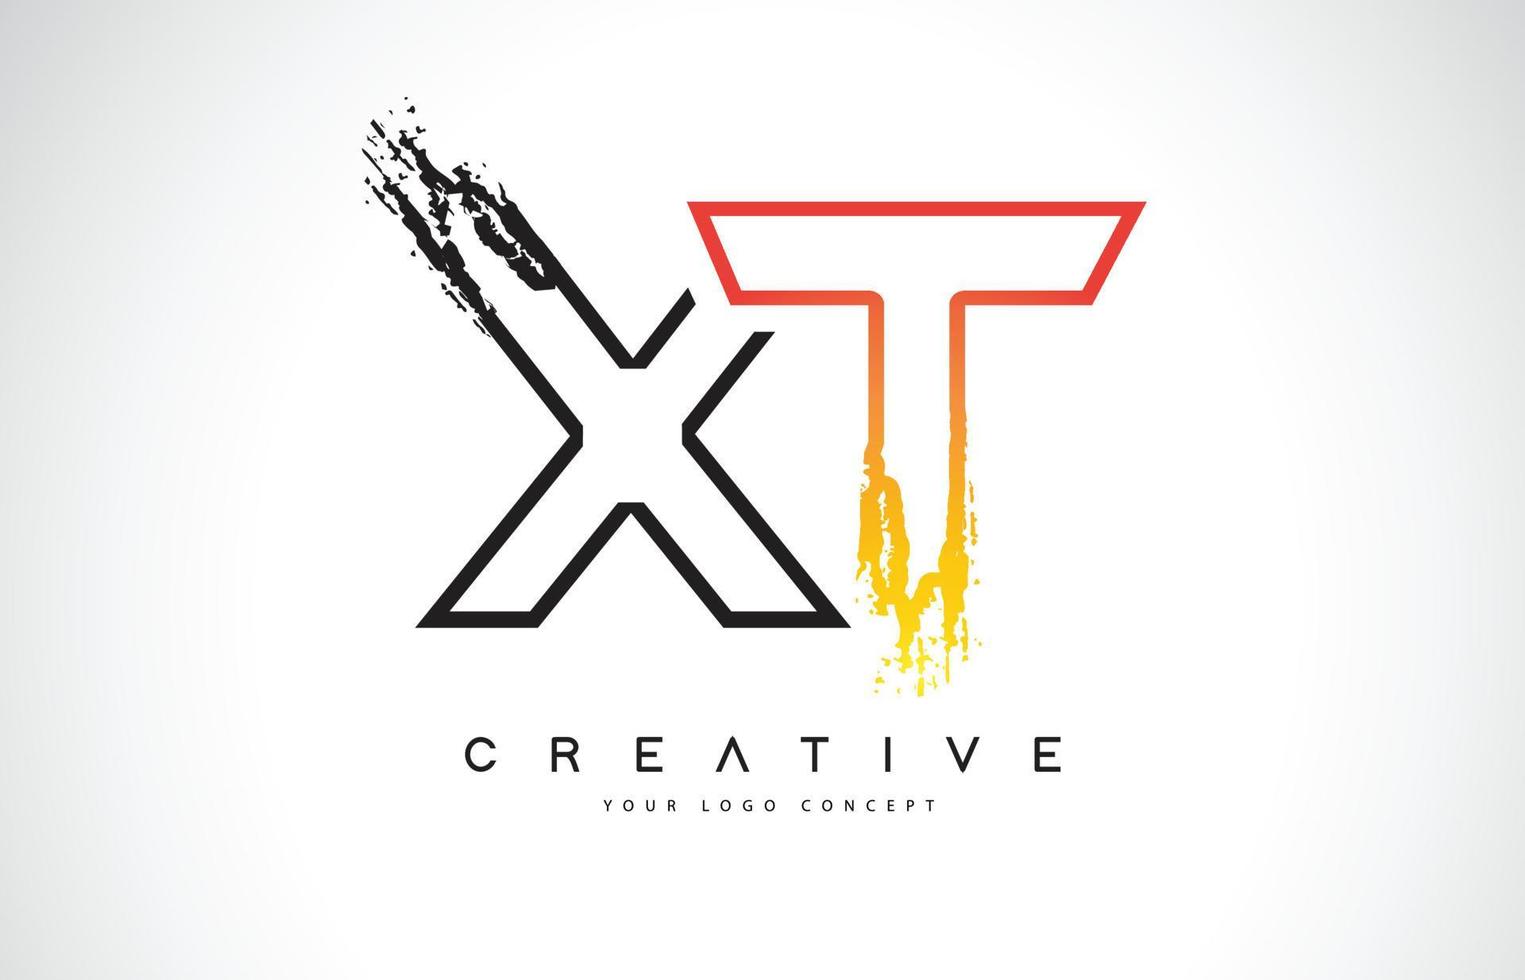 xt kreativ modern logotypdesign med orange och svarta färger. monogram stroke brev design. vektor